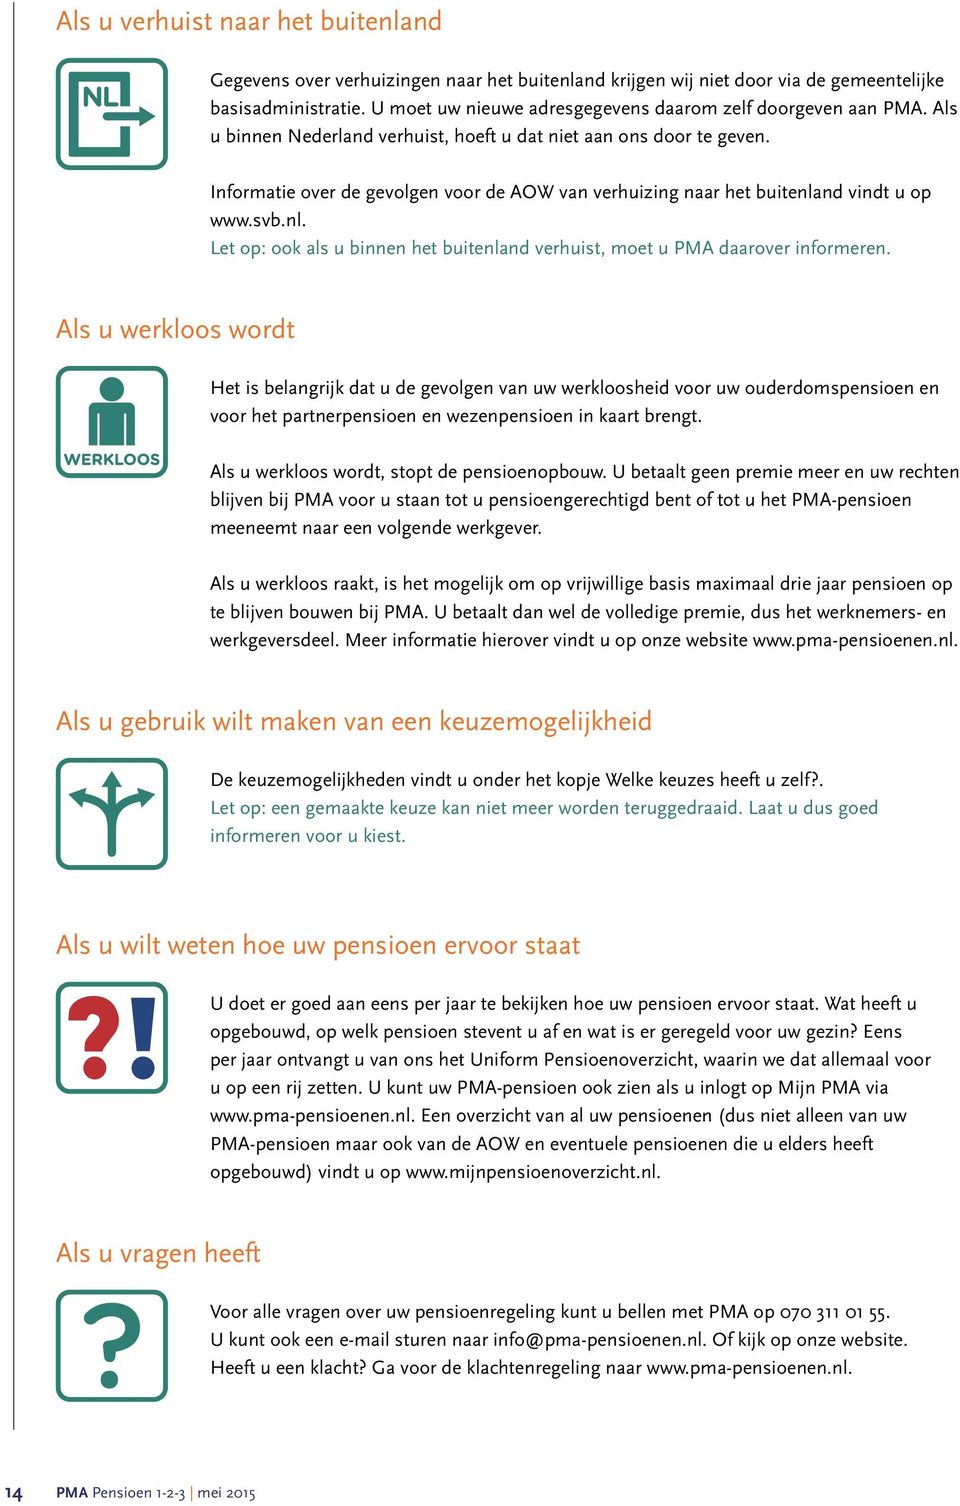 Informatie over de gevolgen voor de AOW van verhuizing naar het buitenland vindt u op www.svb.nl. Let op: ook als u binnen het buitenland verhuist, moet u PMA daarover informeren.